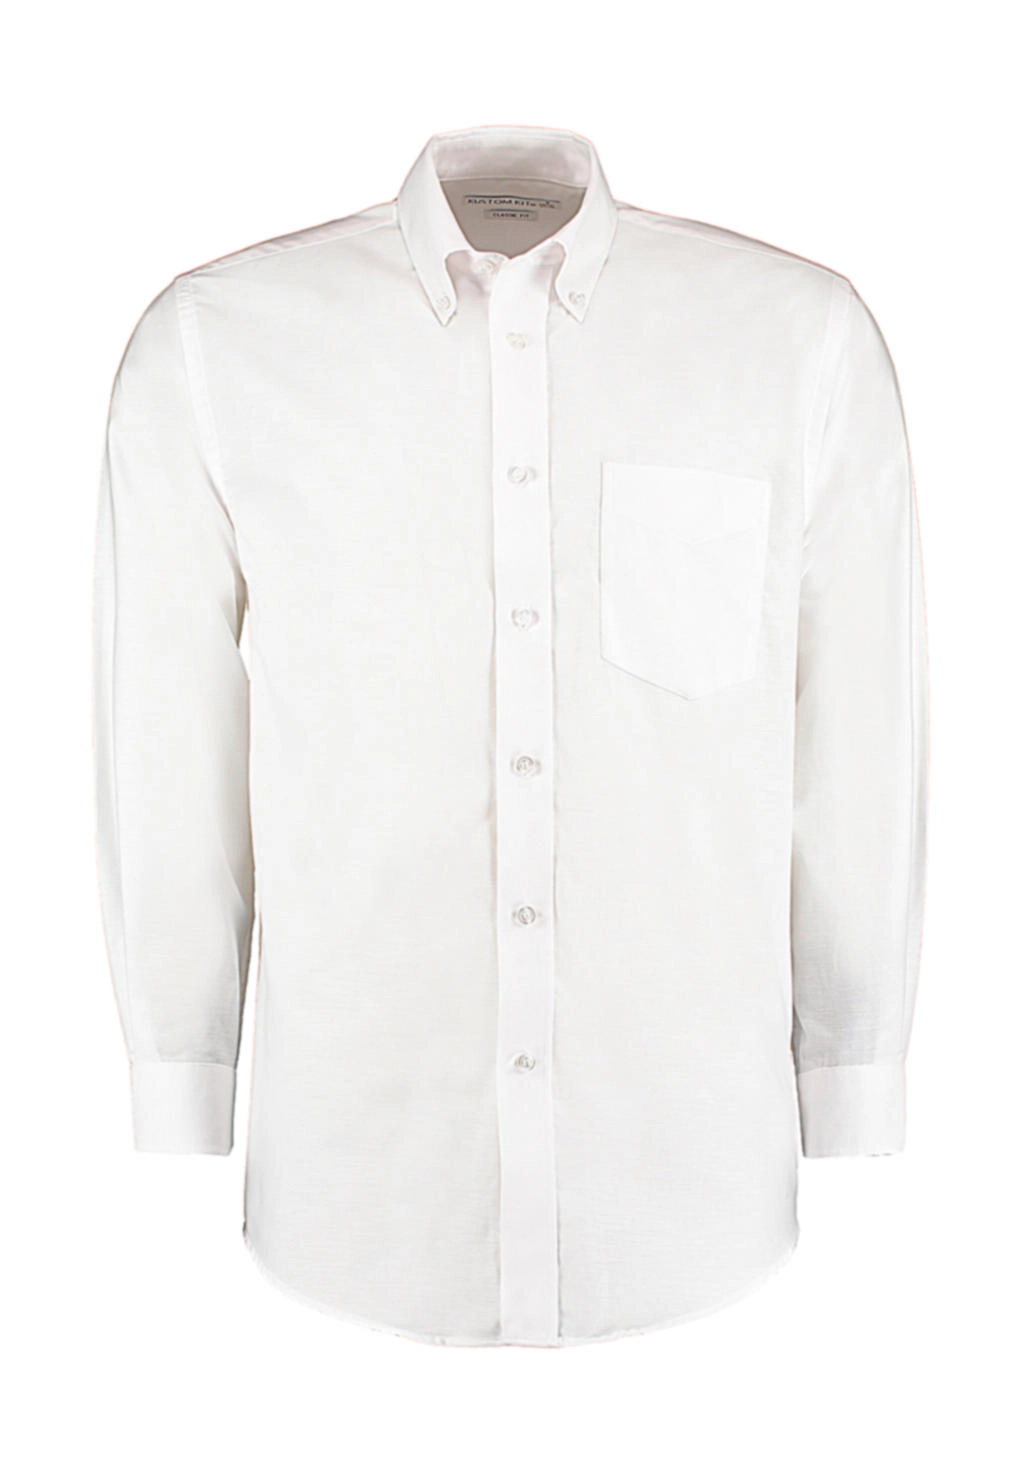 Classic Fit Workwear Oxford Shirt zum Besticken und Bedrucken in der Farbe White mit Ihren Logo, Schriftzug oder Motiv.